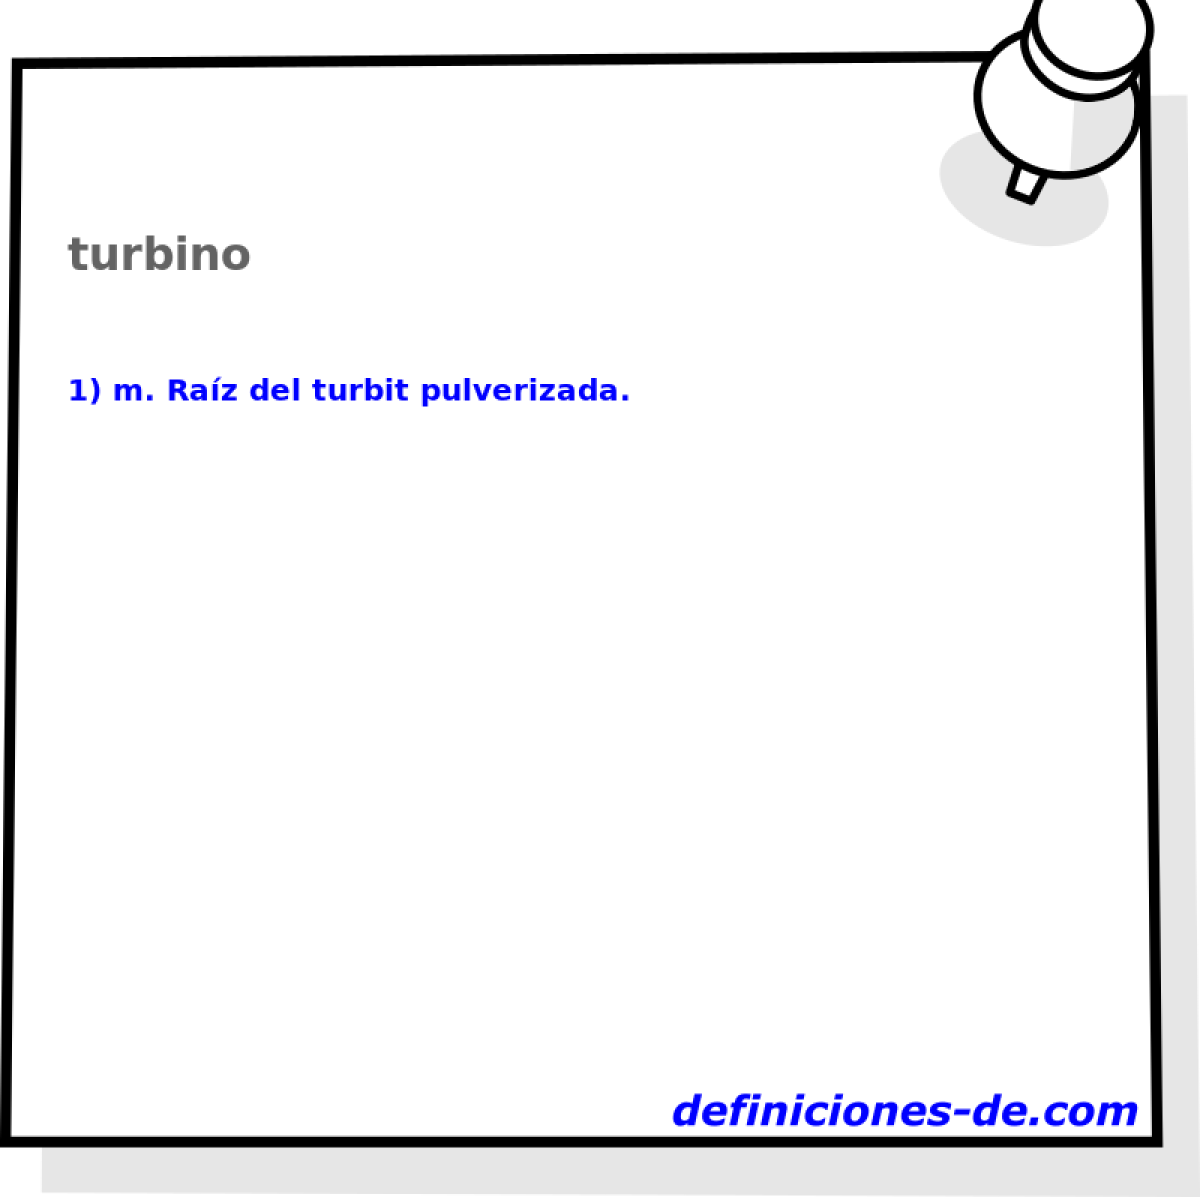 turbino 